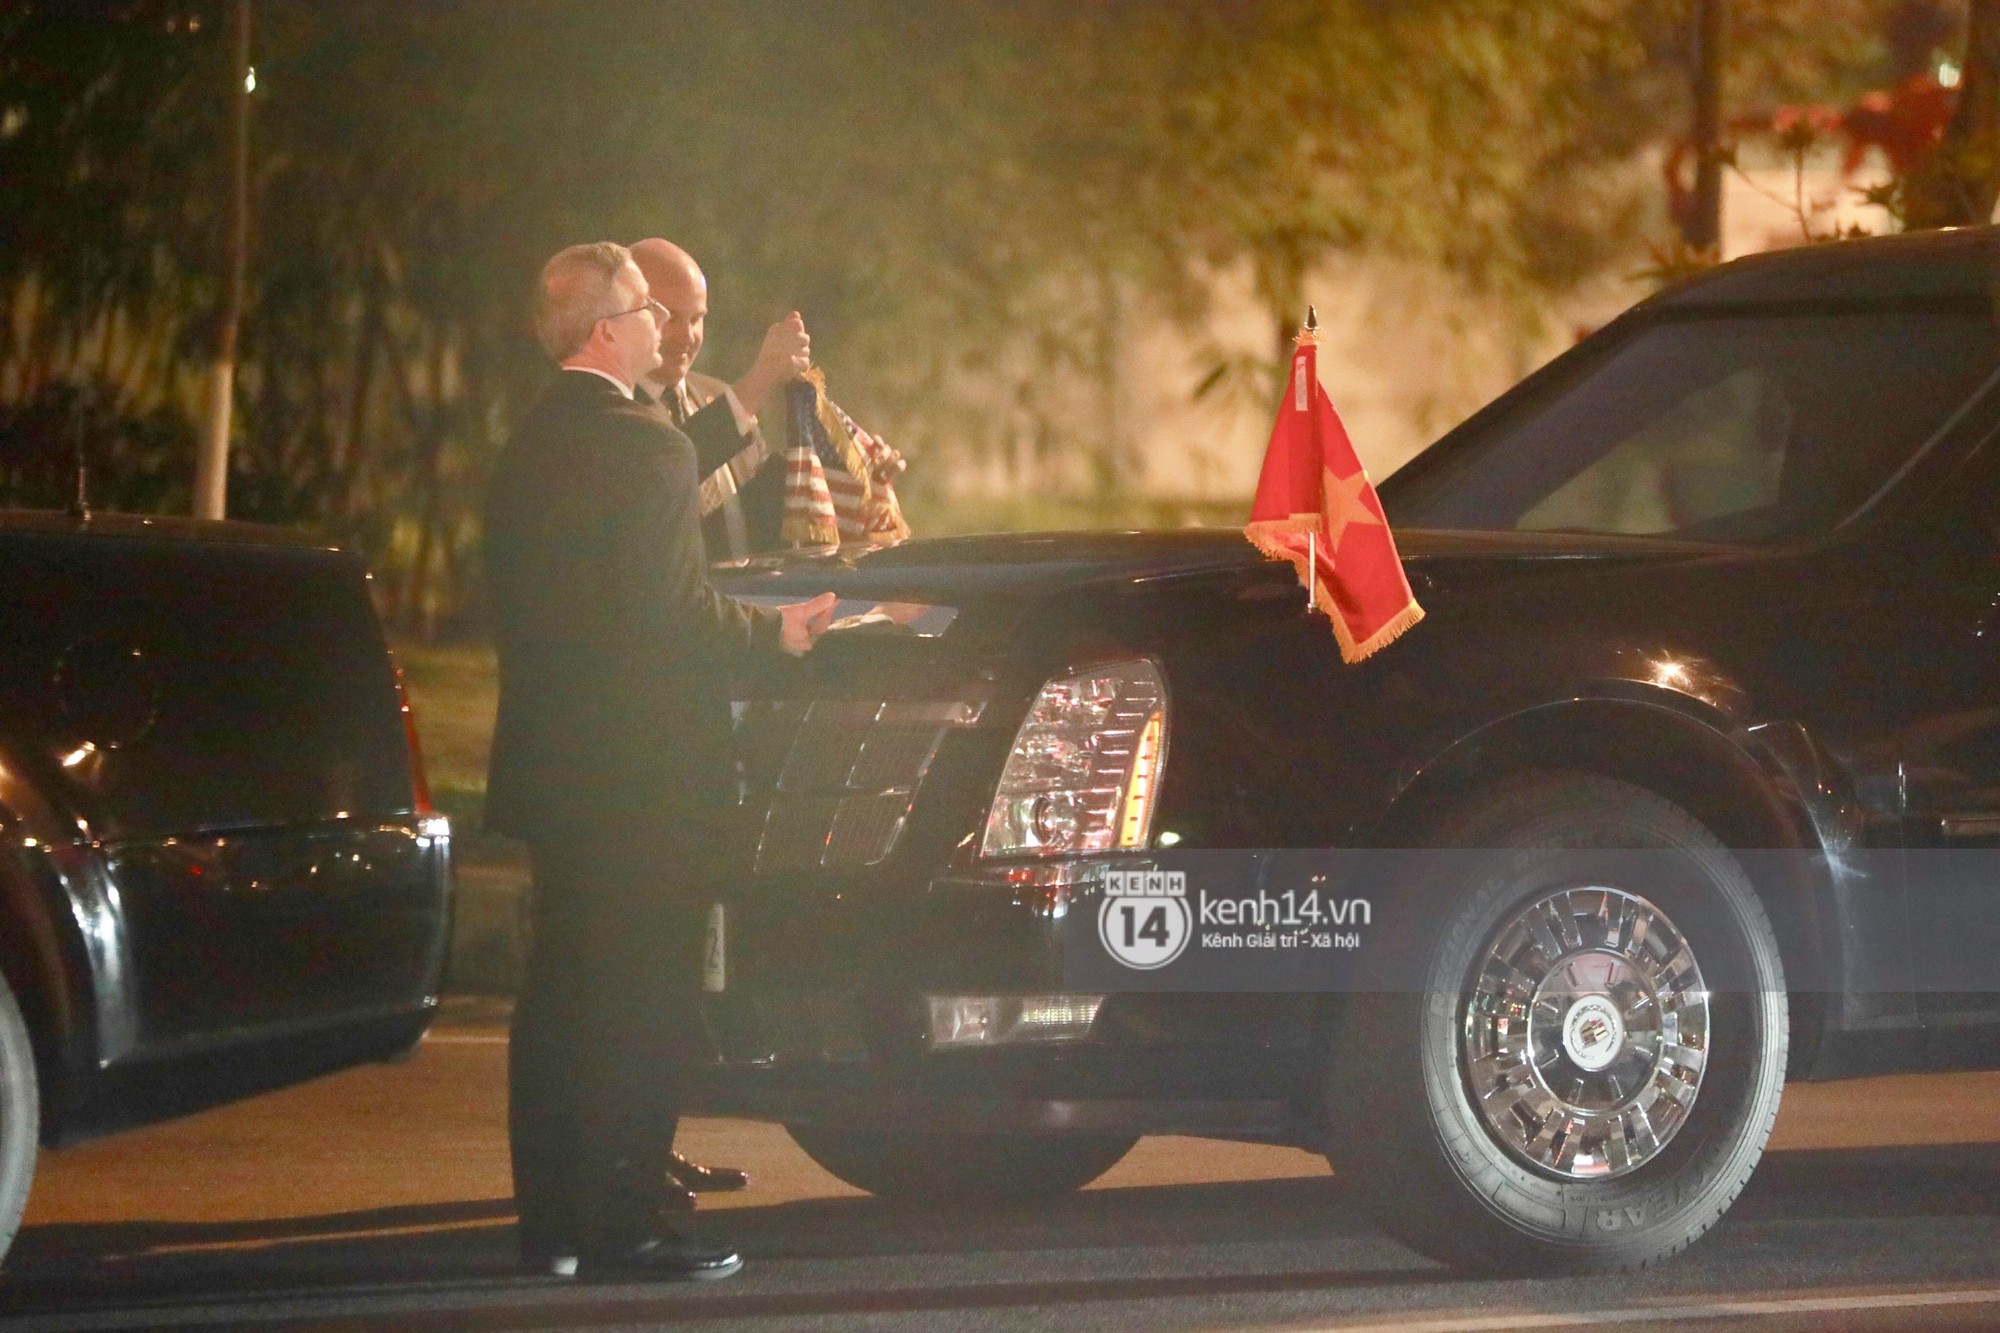 Tổng thống Mỹ Donald Trump xuống chuyên cơ, đang trên siêu xe quái thú vào trung tâm Hà Nội - Ảnh 29.